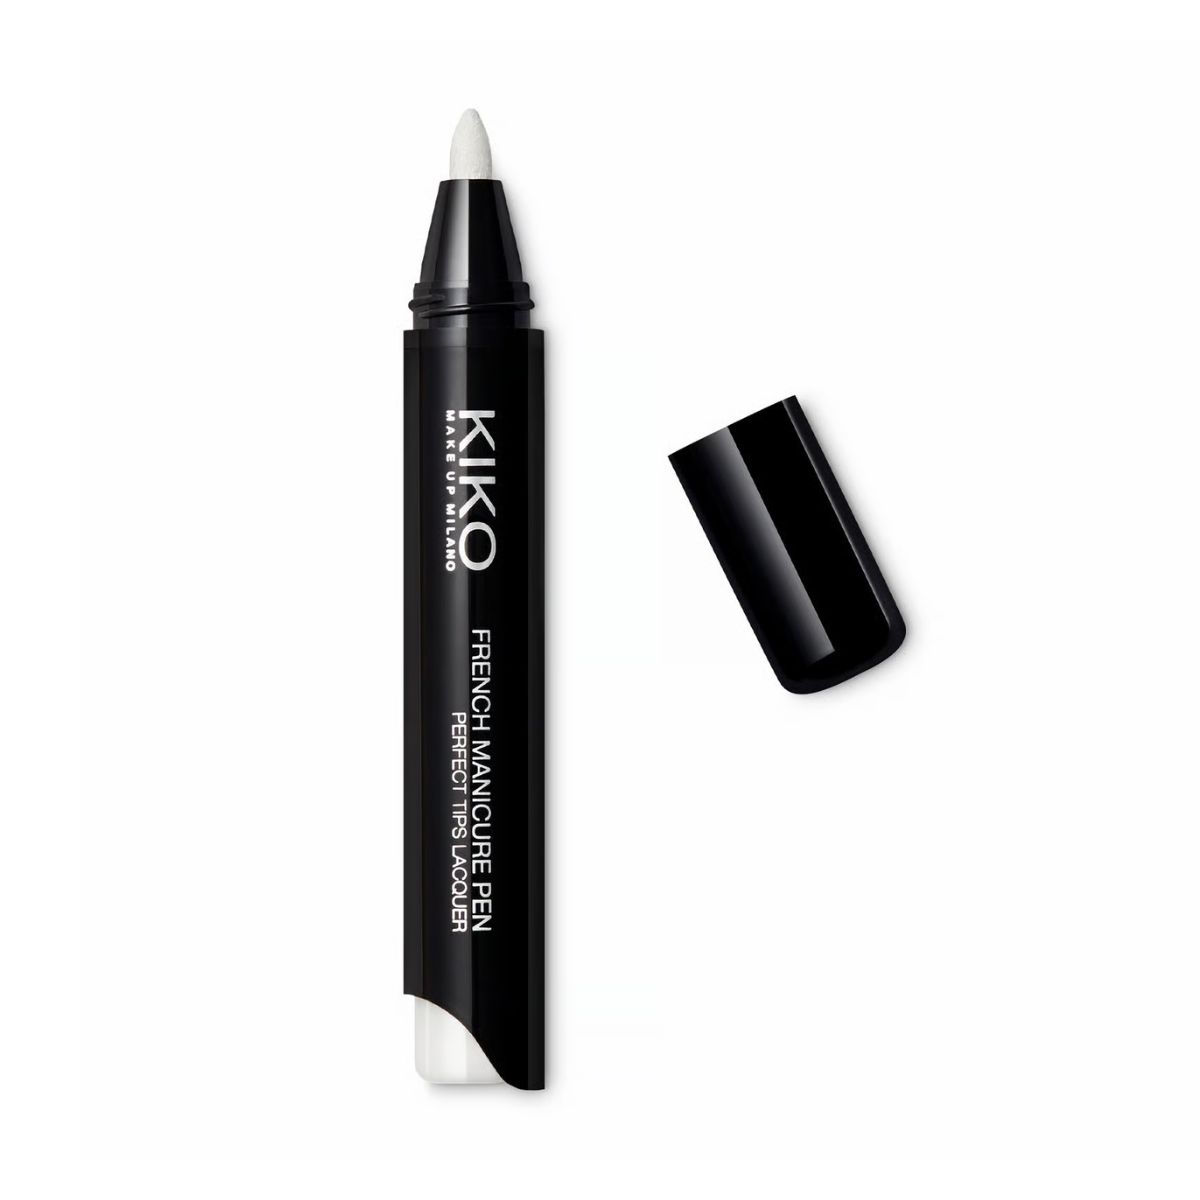 KIKO Milano + White French Nail cropping Pen